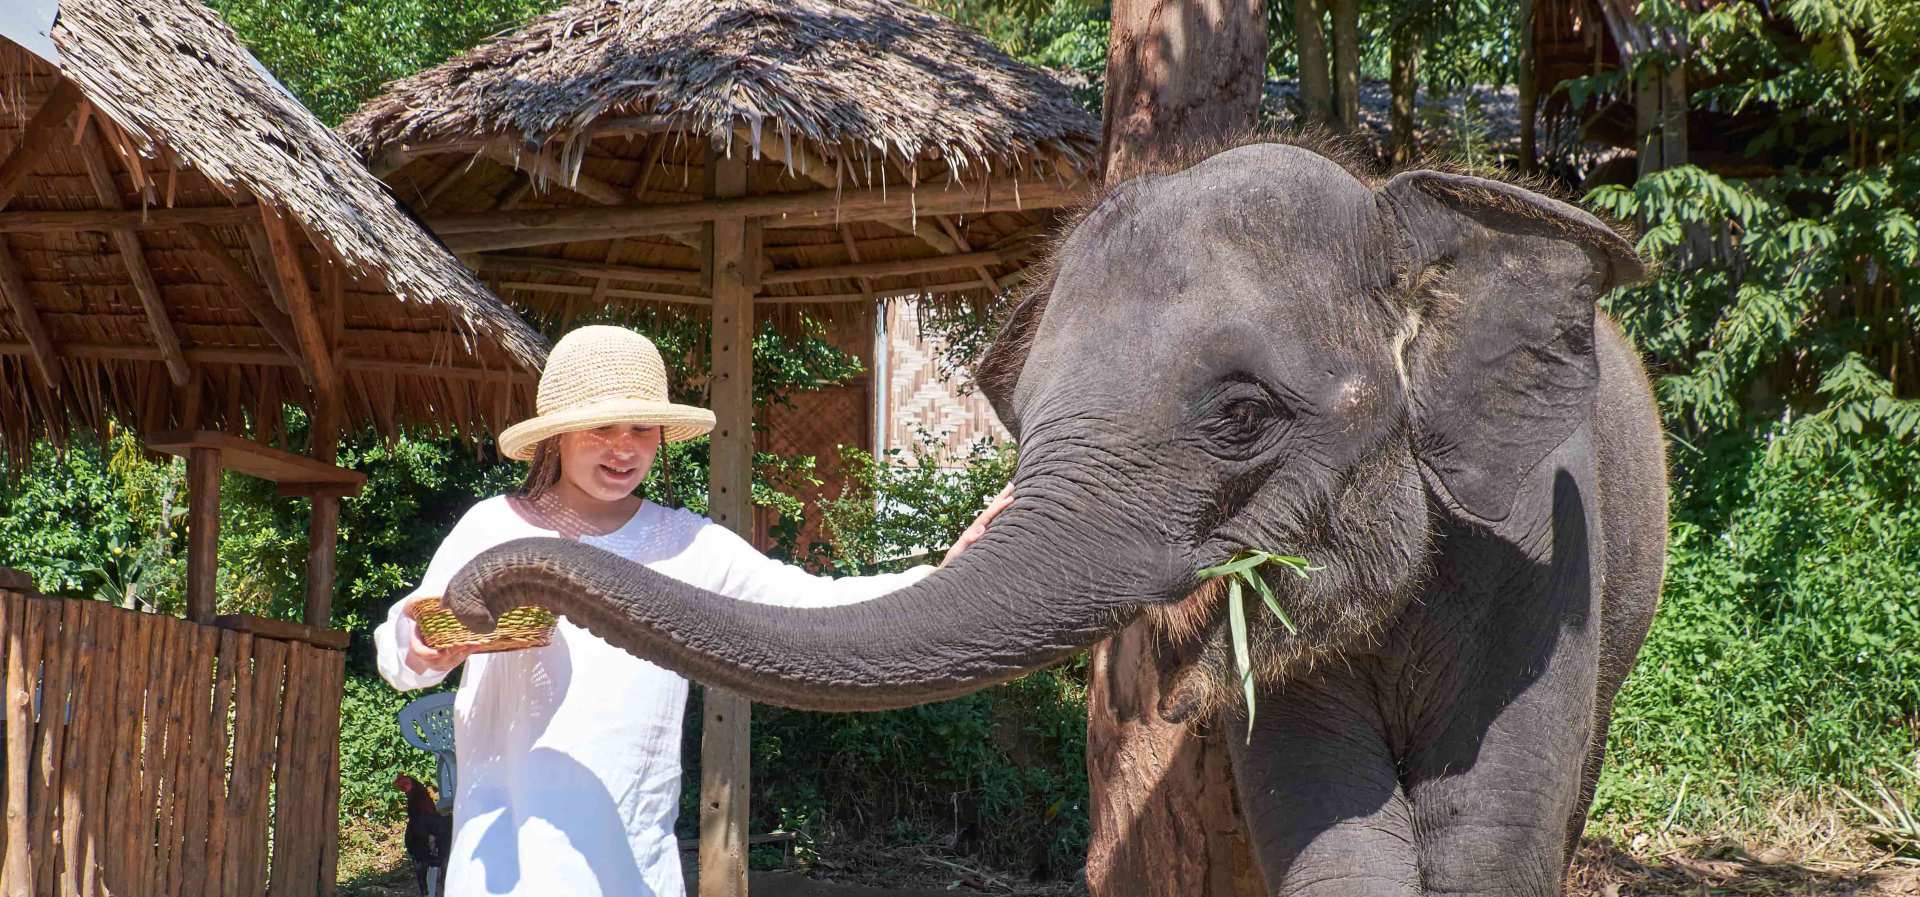  【清邁友善大象體驗】大象保護園區、大象便便環保紙公園 